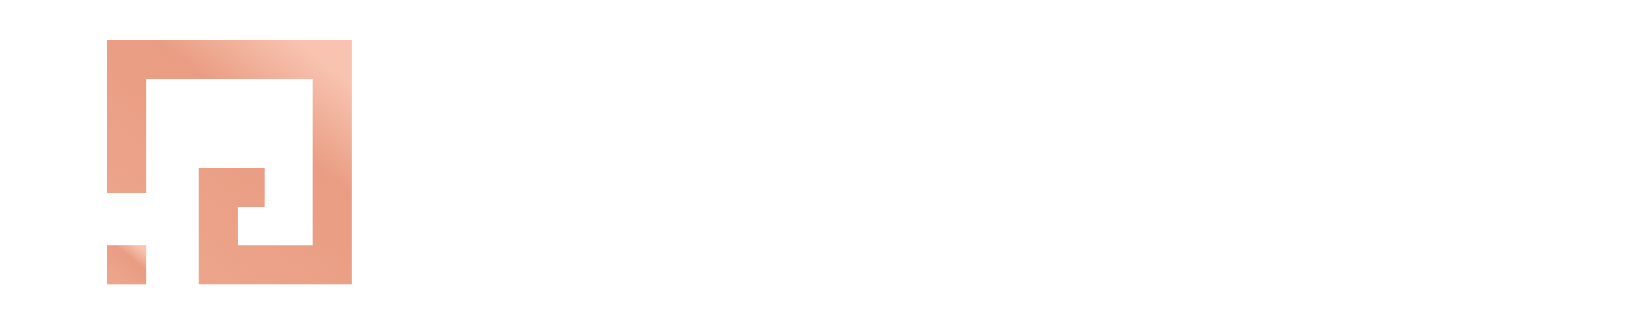 Elephantstock logo